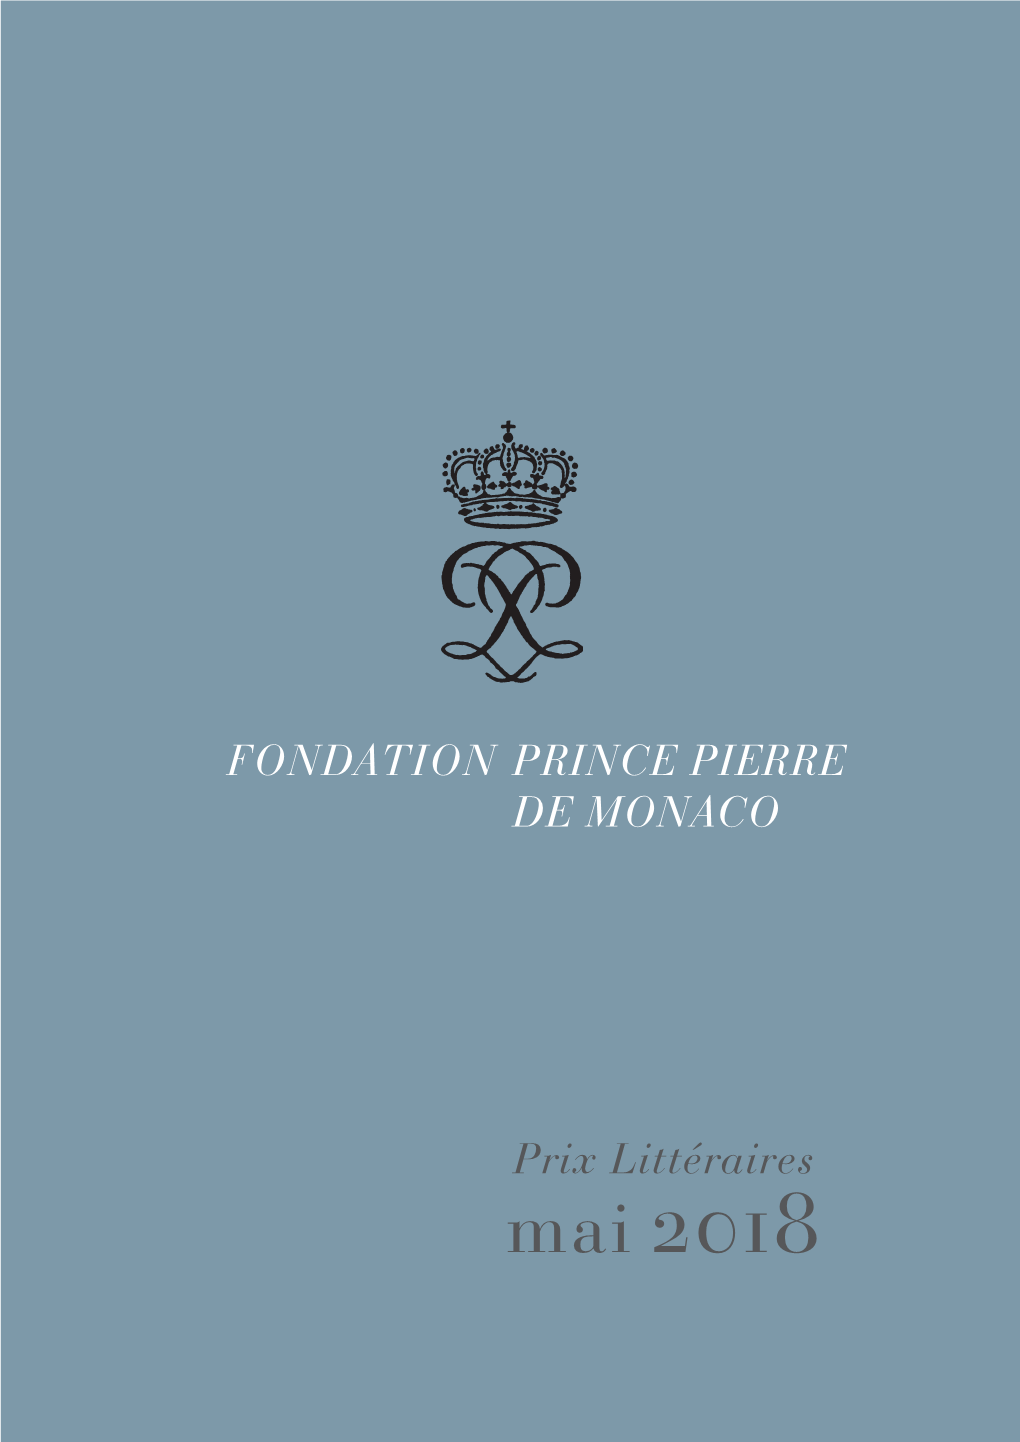 Prix Littéraires Mai 2018 FONDATION PRINCE PIERRE